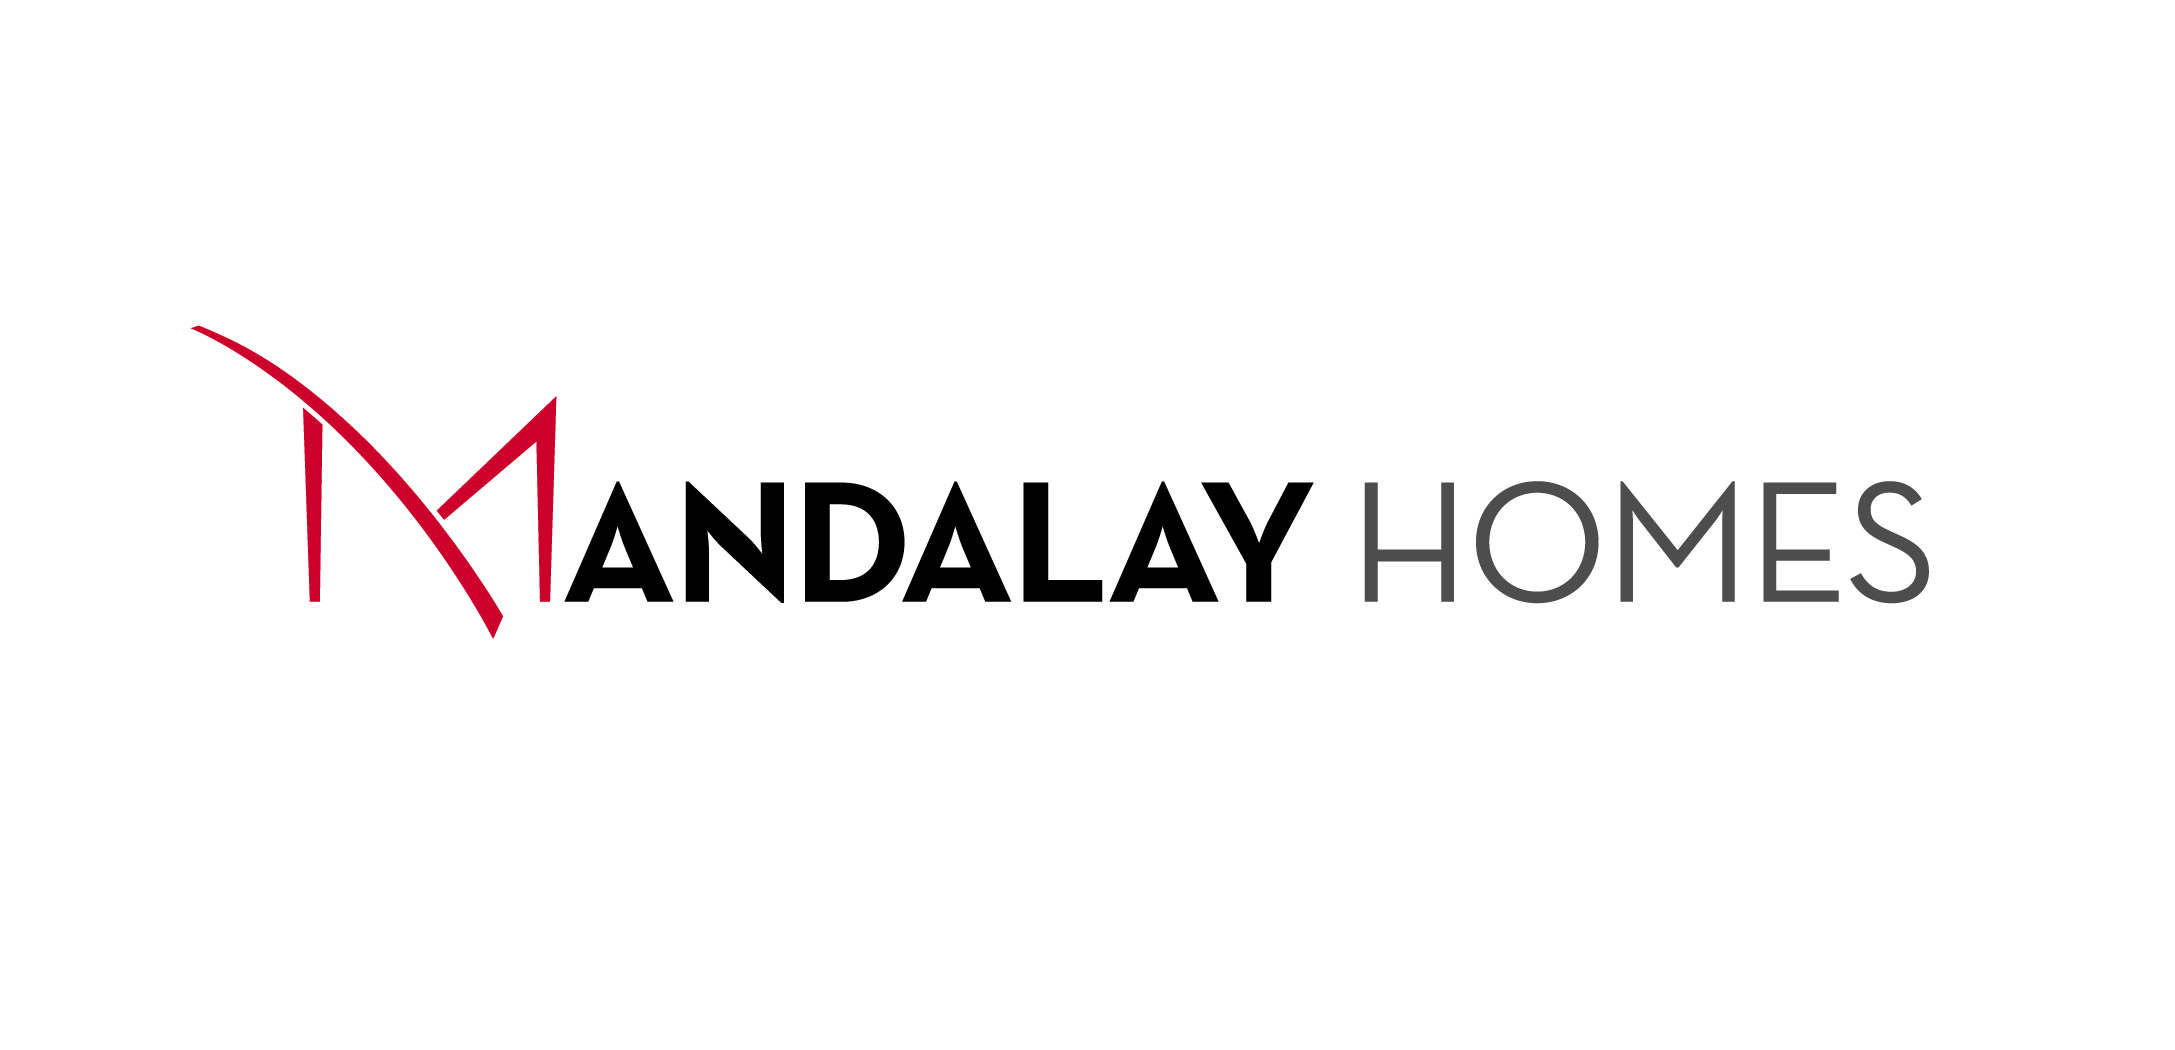 Mandalay Homes company logo